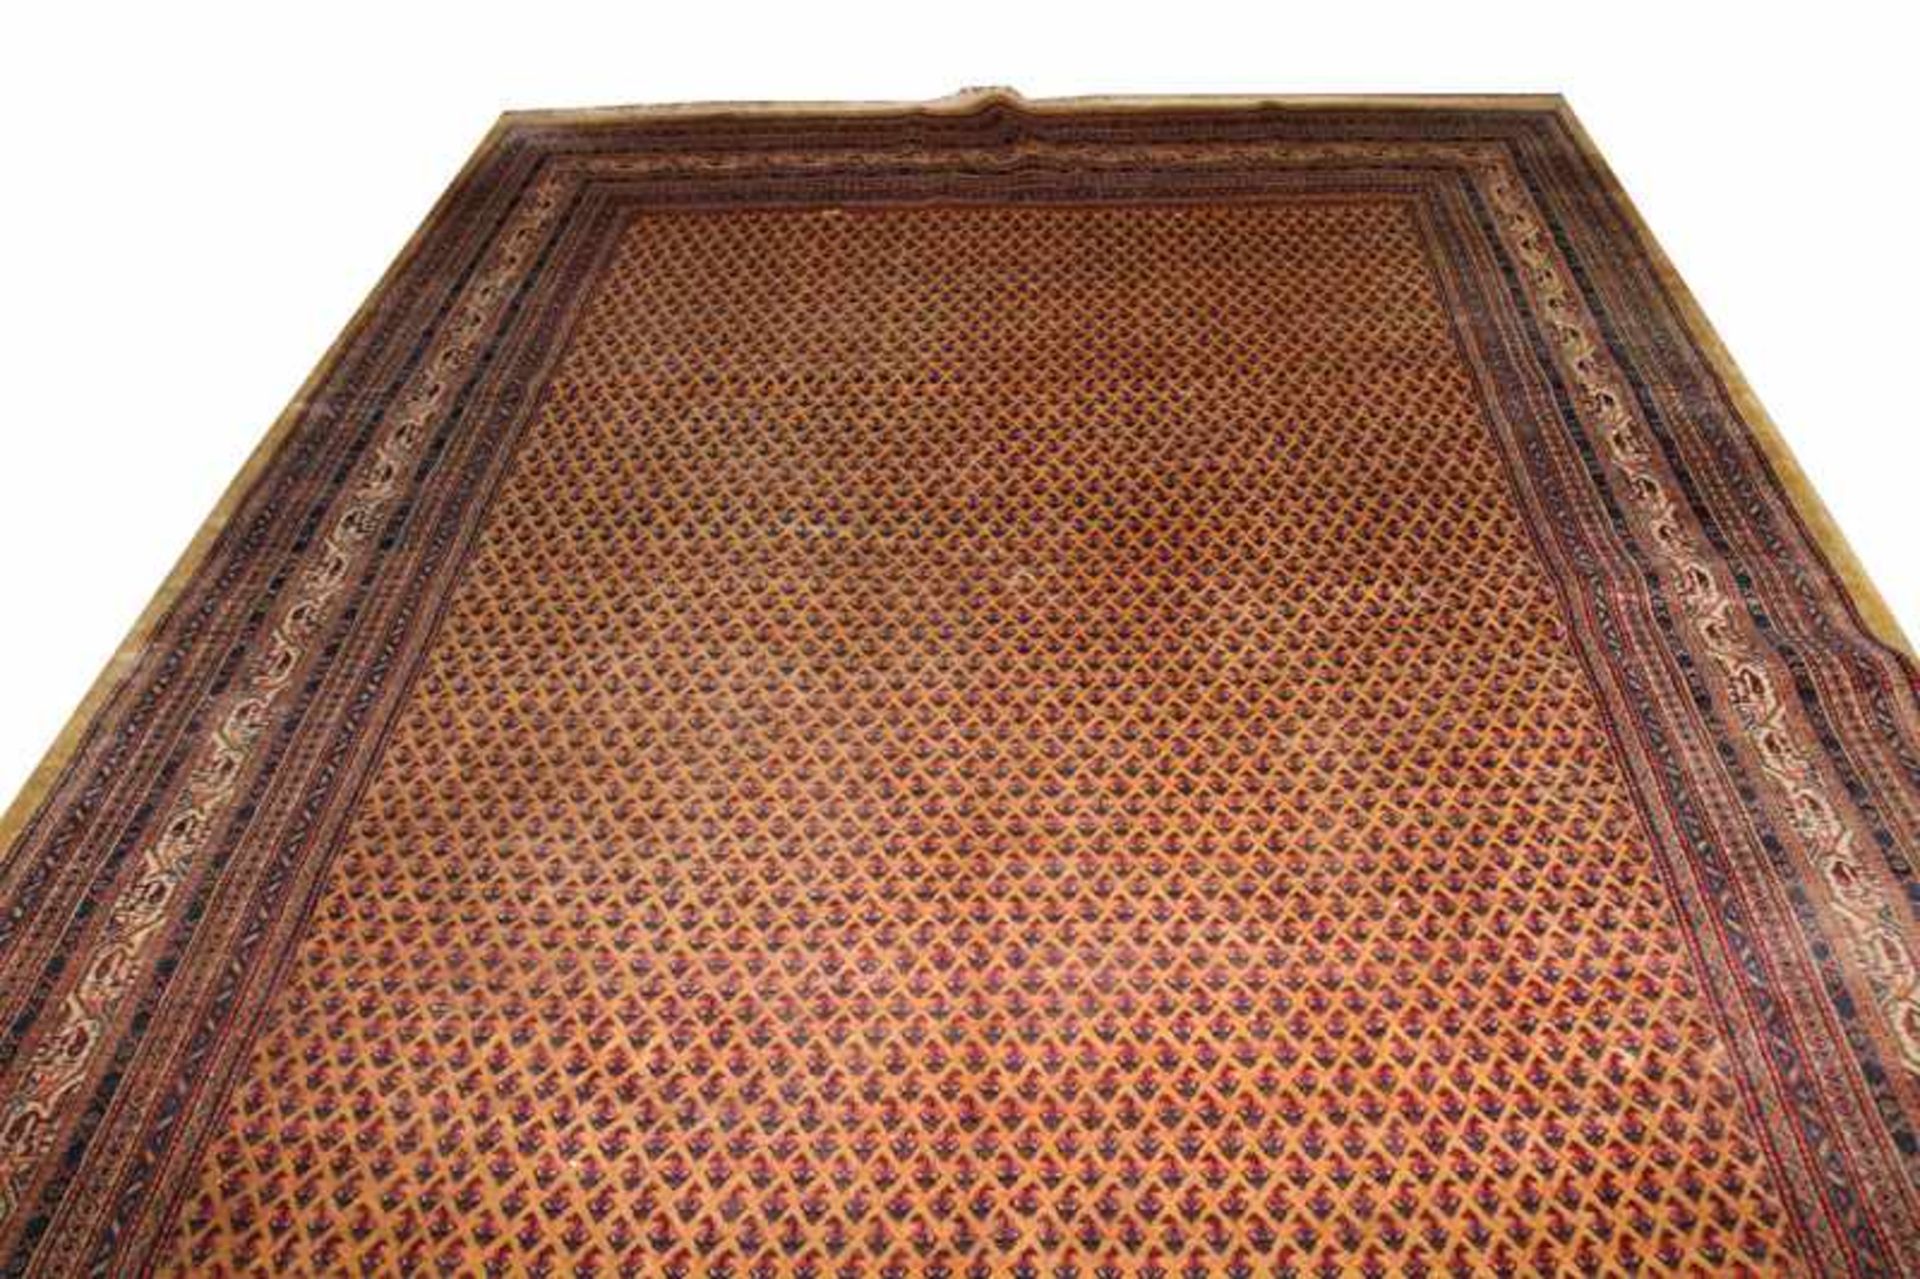 Teppich, Mir, braun/blau/rot, Gebrauchsspuren, fleckig, 370 cm x 249 cm